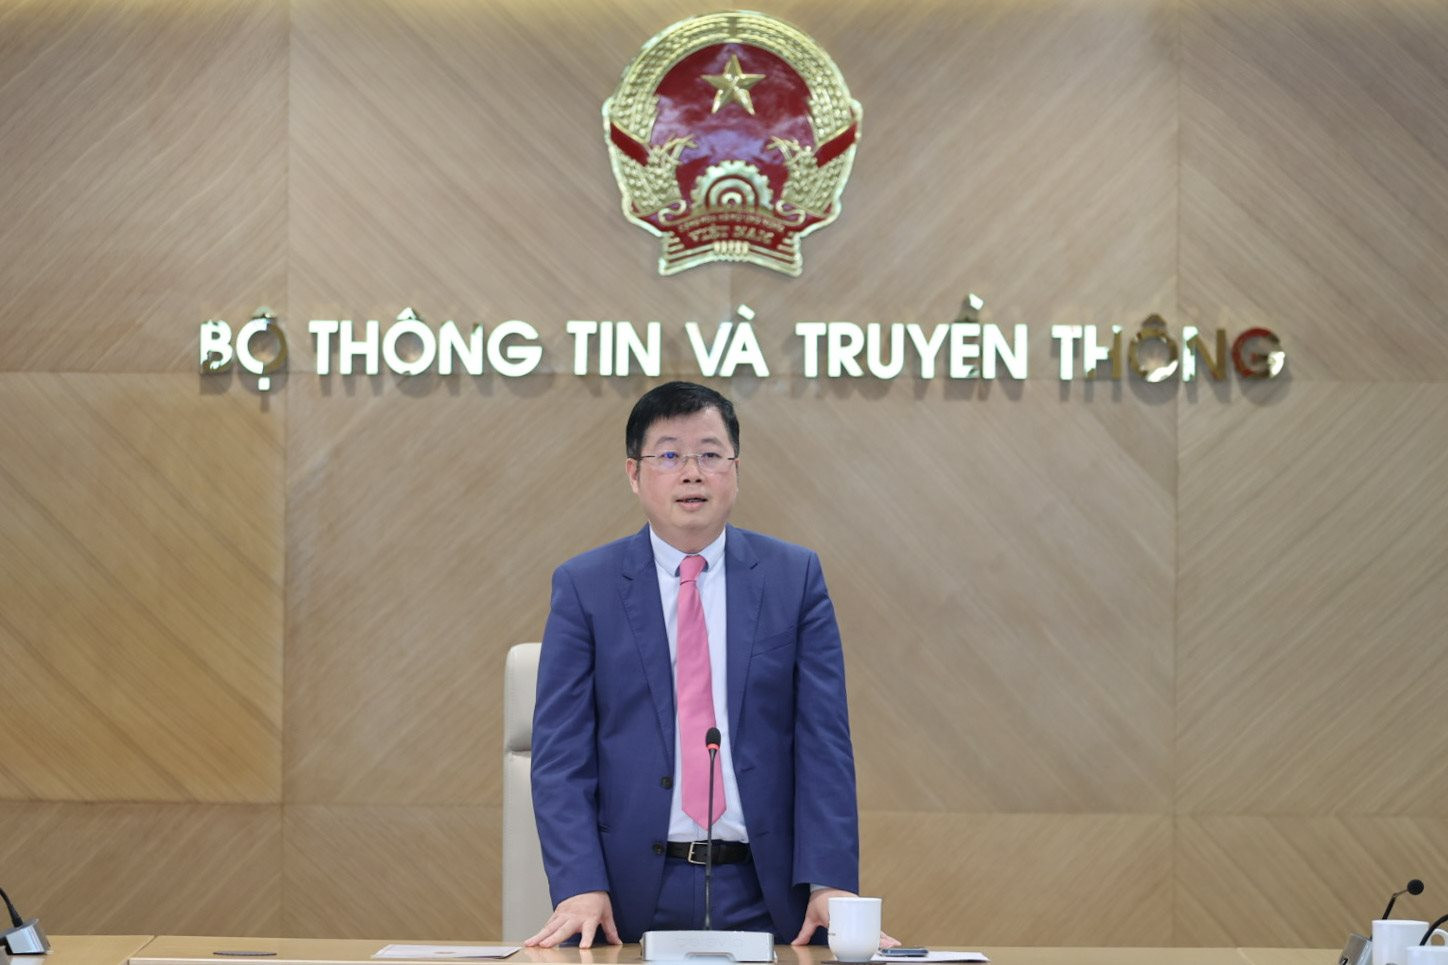 Phó cục trưởng Cục Báo chí Nguyễn Văn Hiếu giữ chức Tổng Biên tập Tạp chí Thông tin và Truyền thông - Ảnh 3.